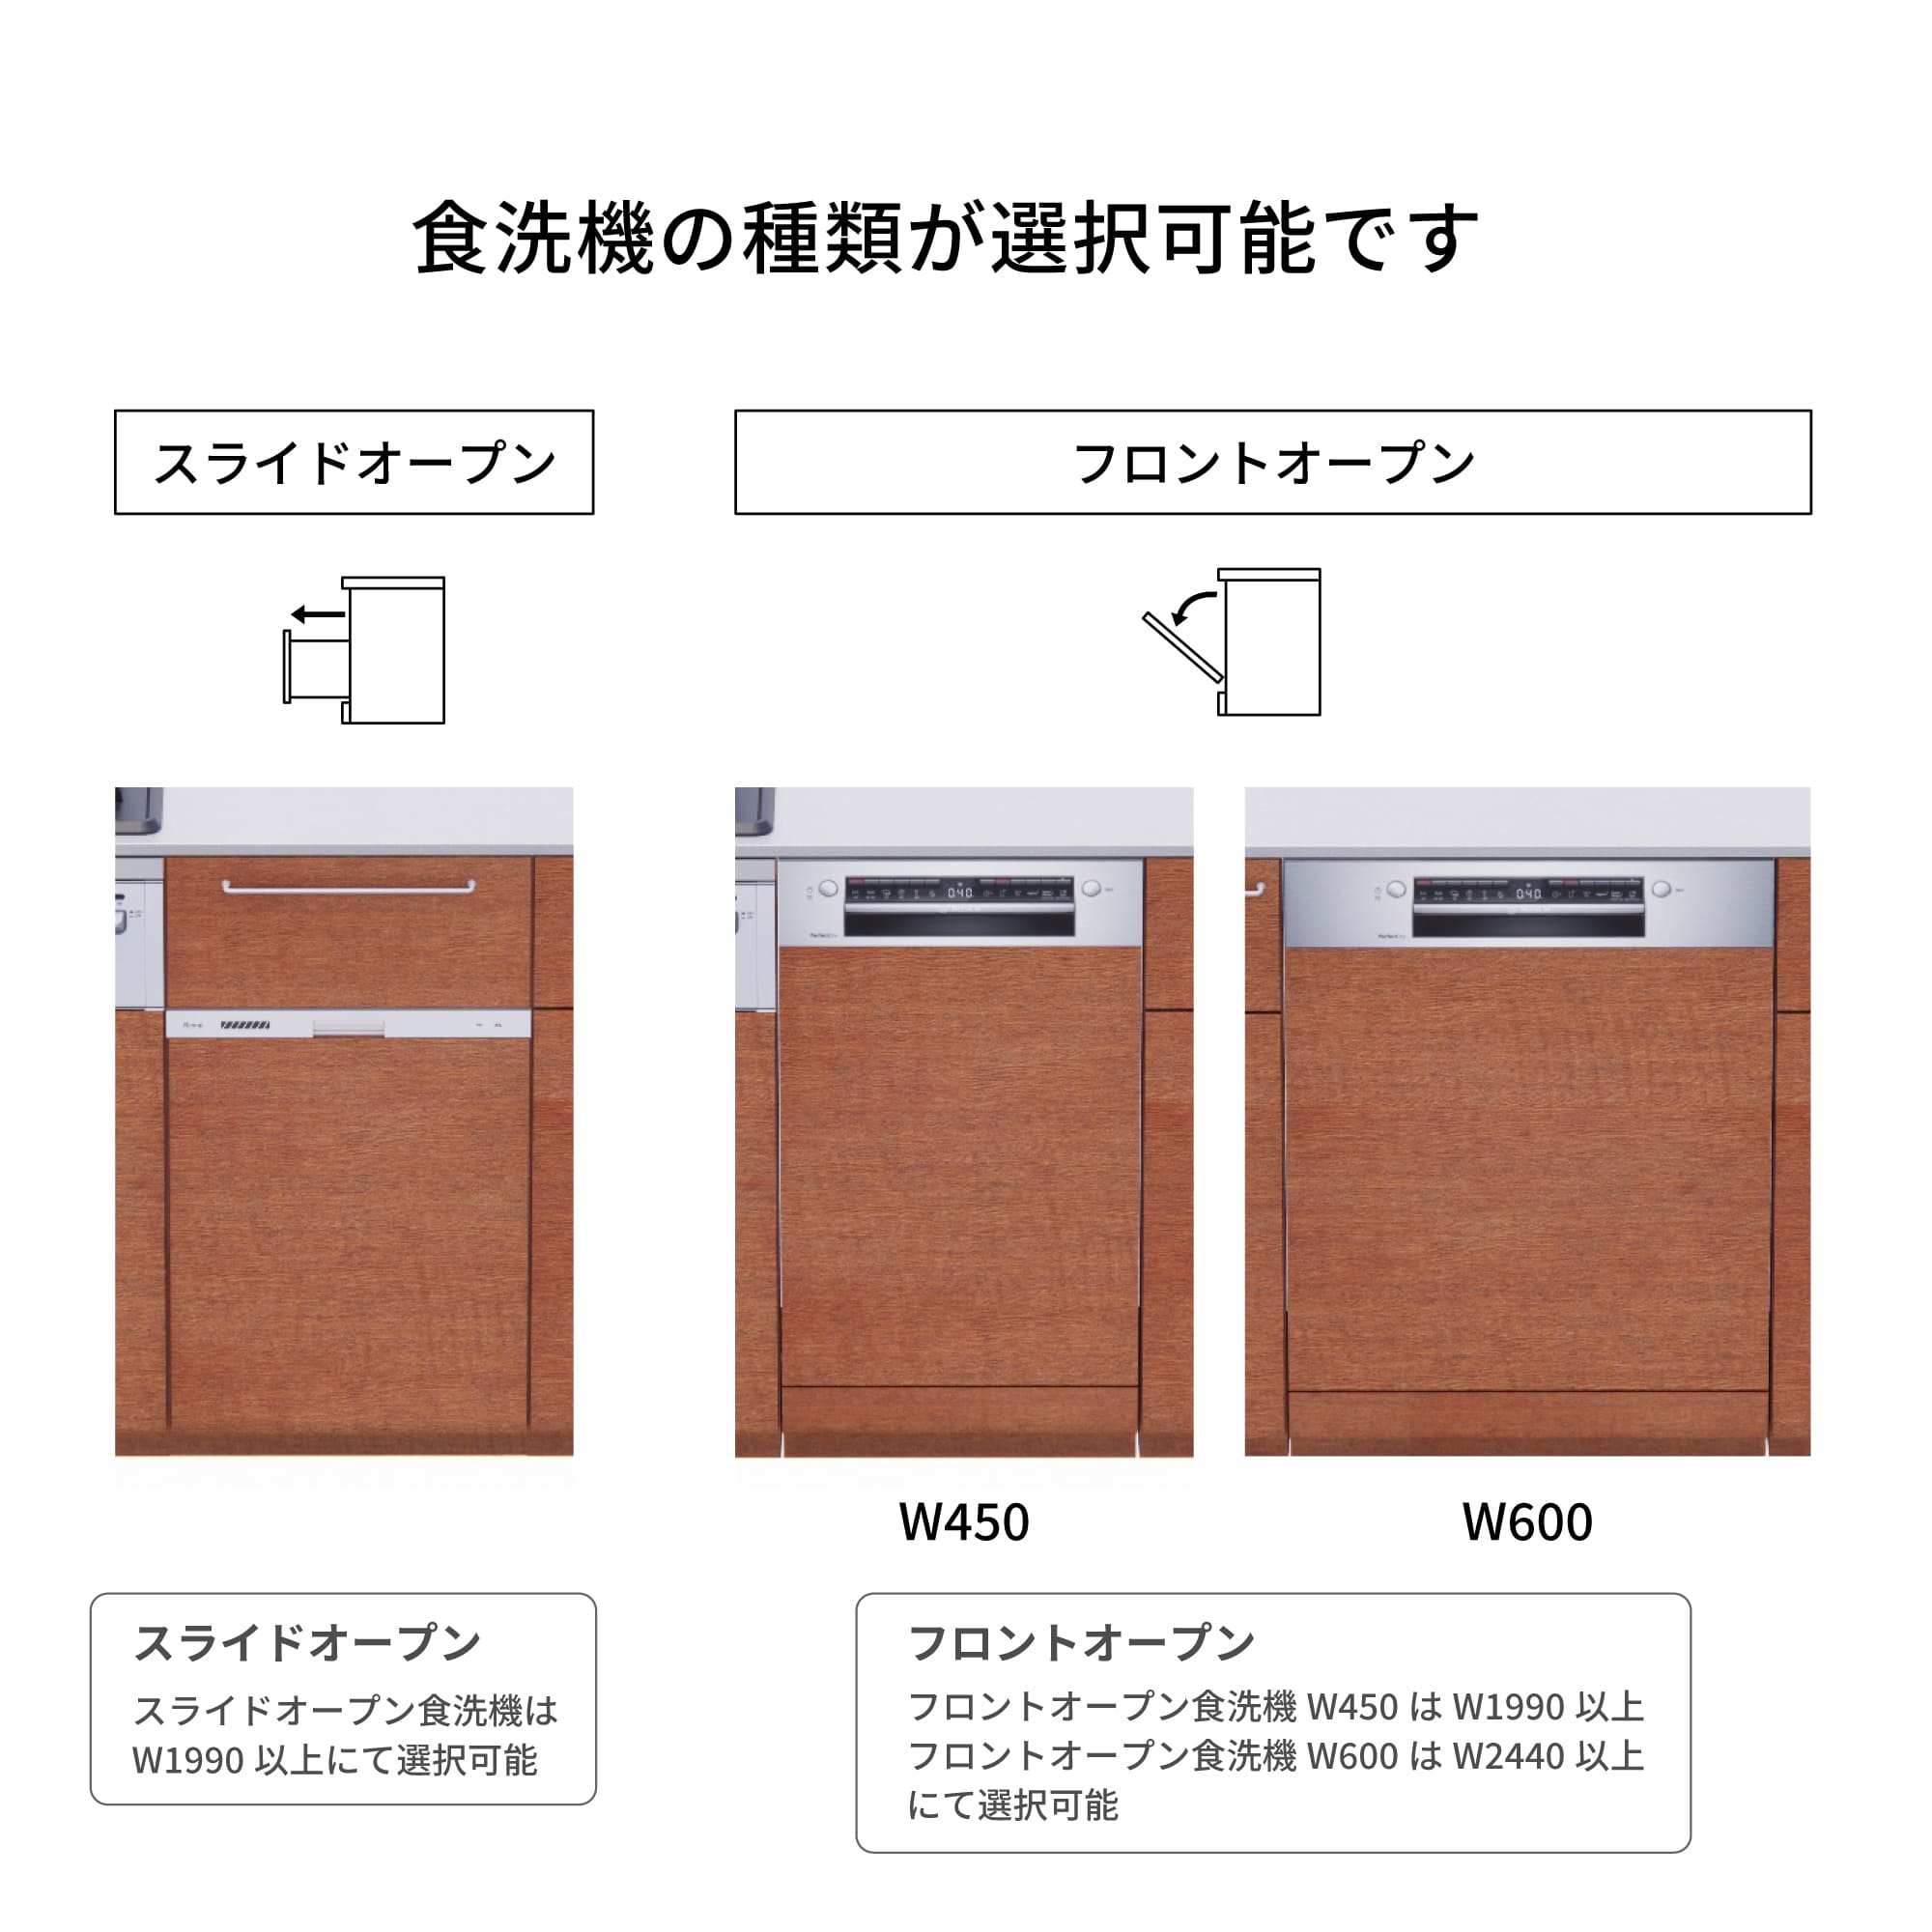 木製システムキッチン 対面型 W2140～2290・コンロあり / オーブンなし / 食洗機あり KB-KC022-38-G183 食洗機が選択できます